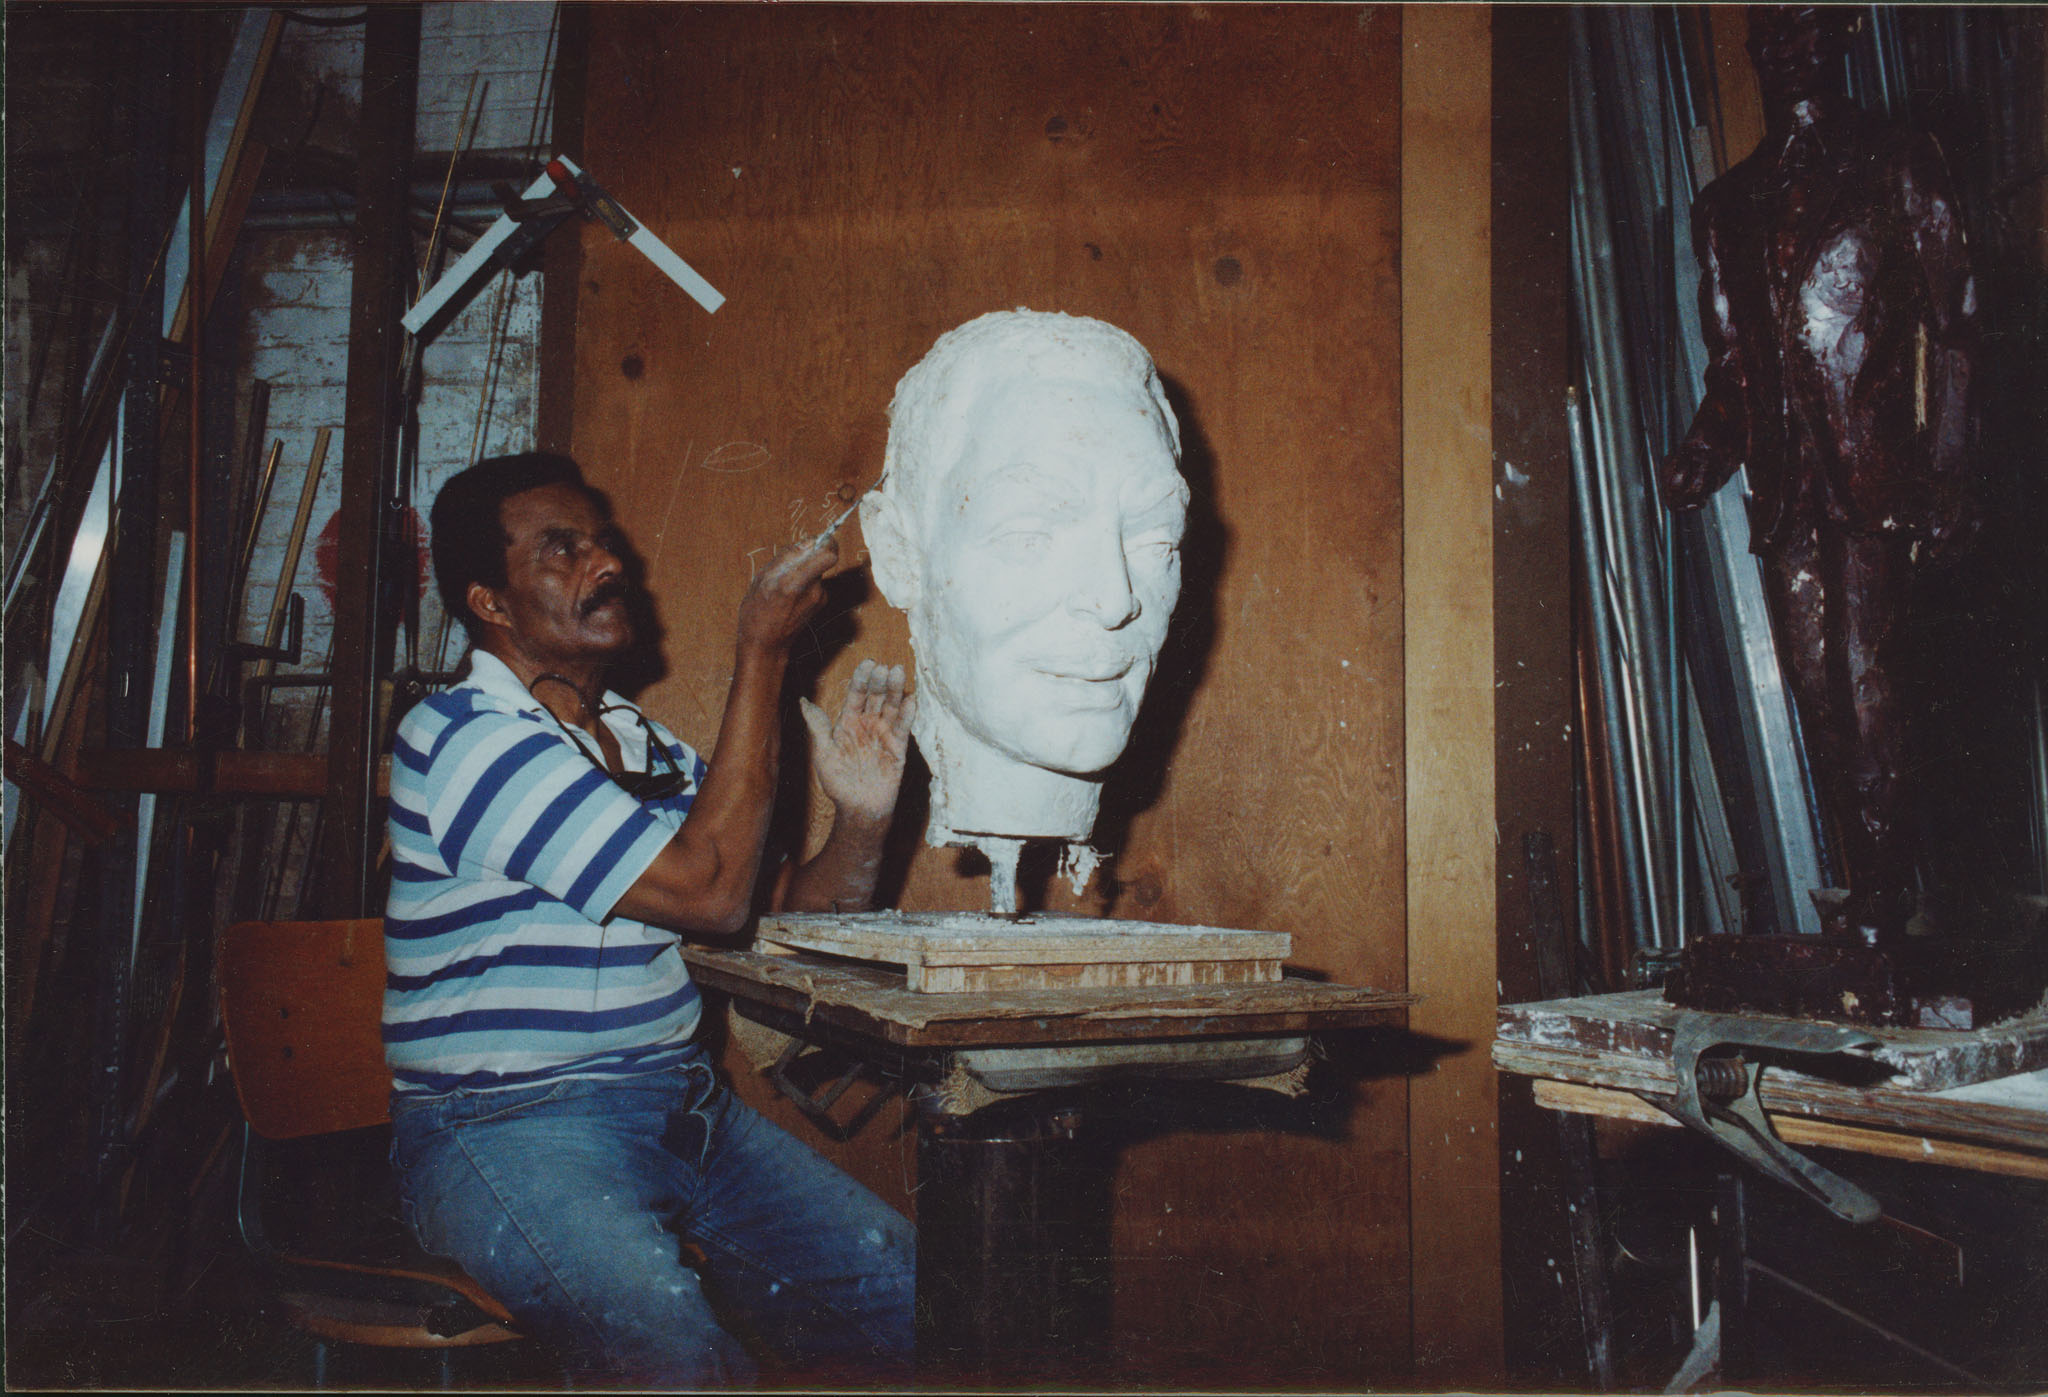 An artist sculpting a head.